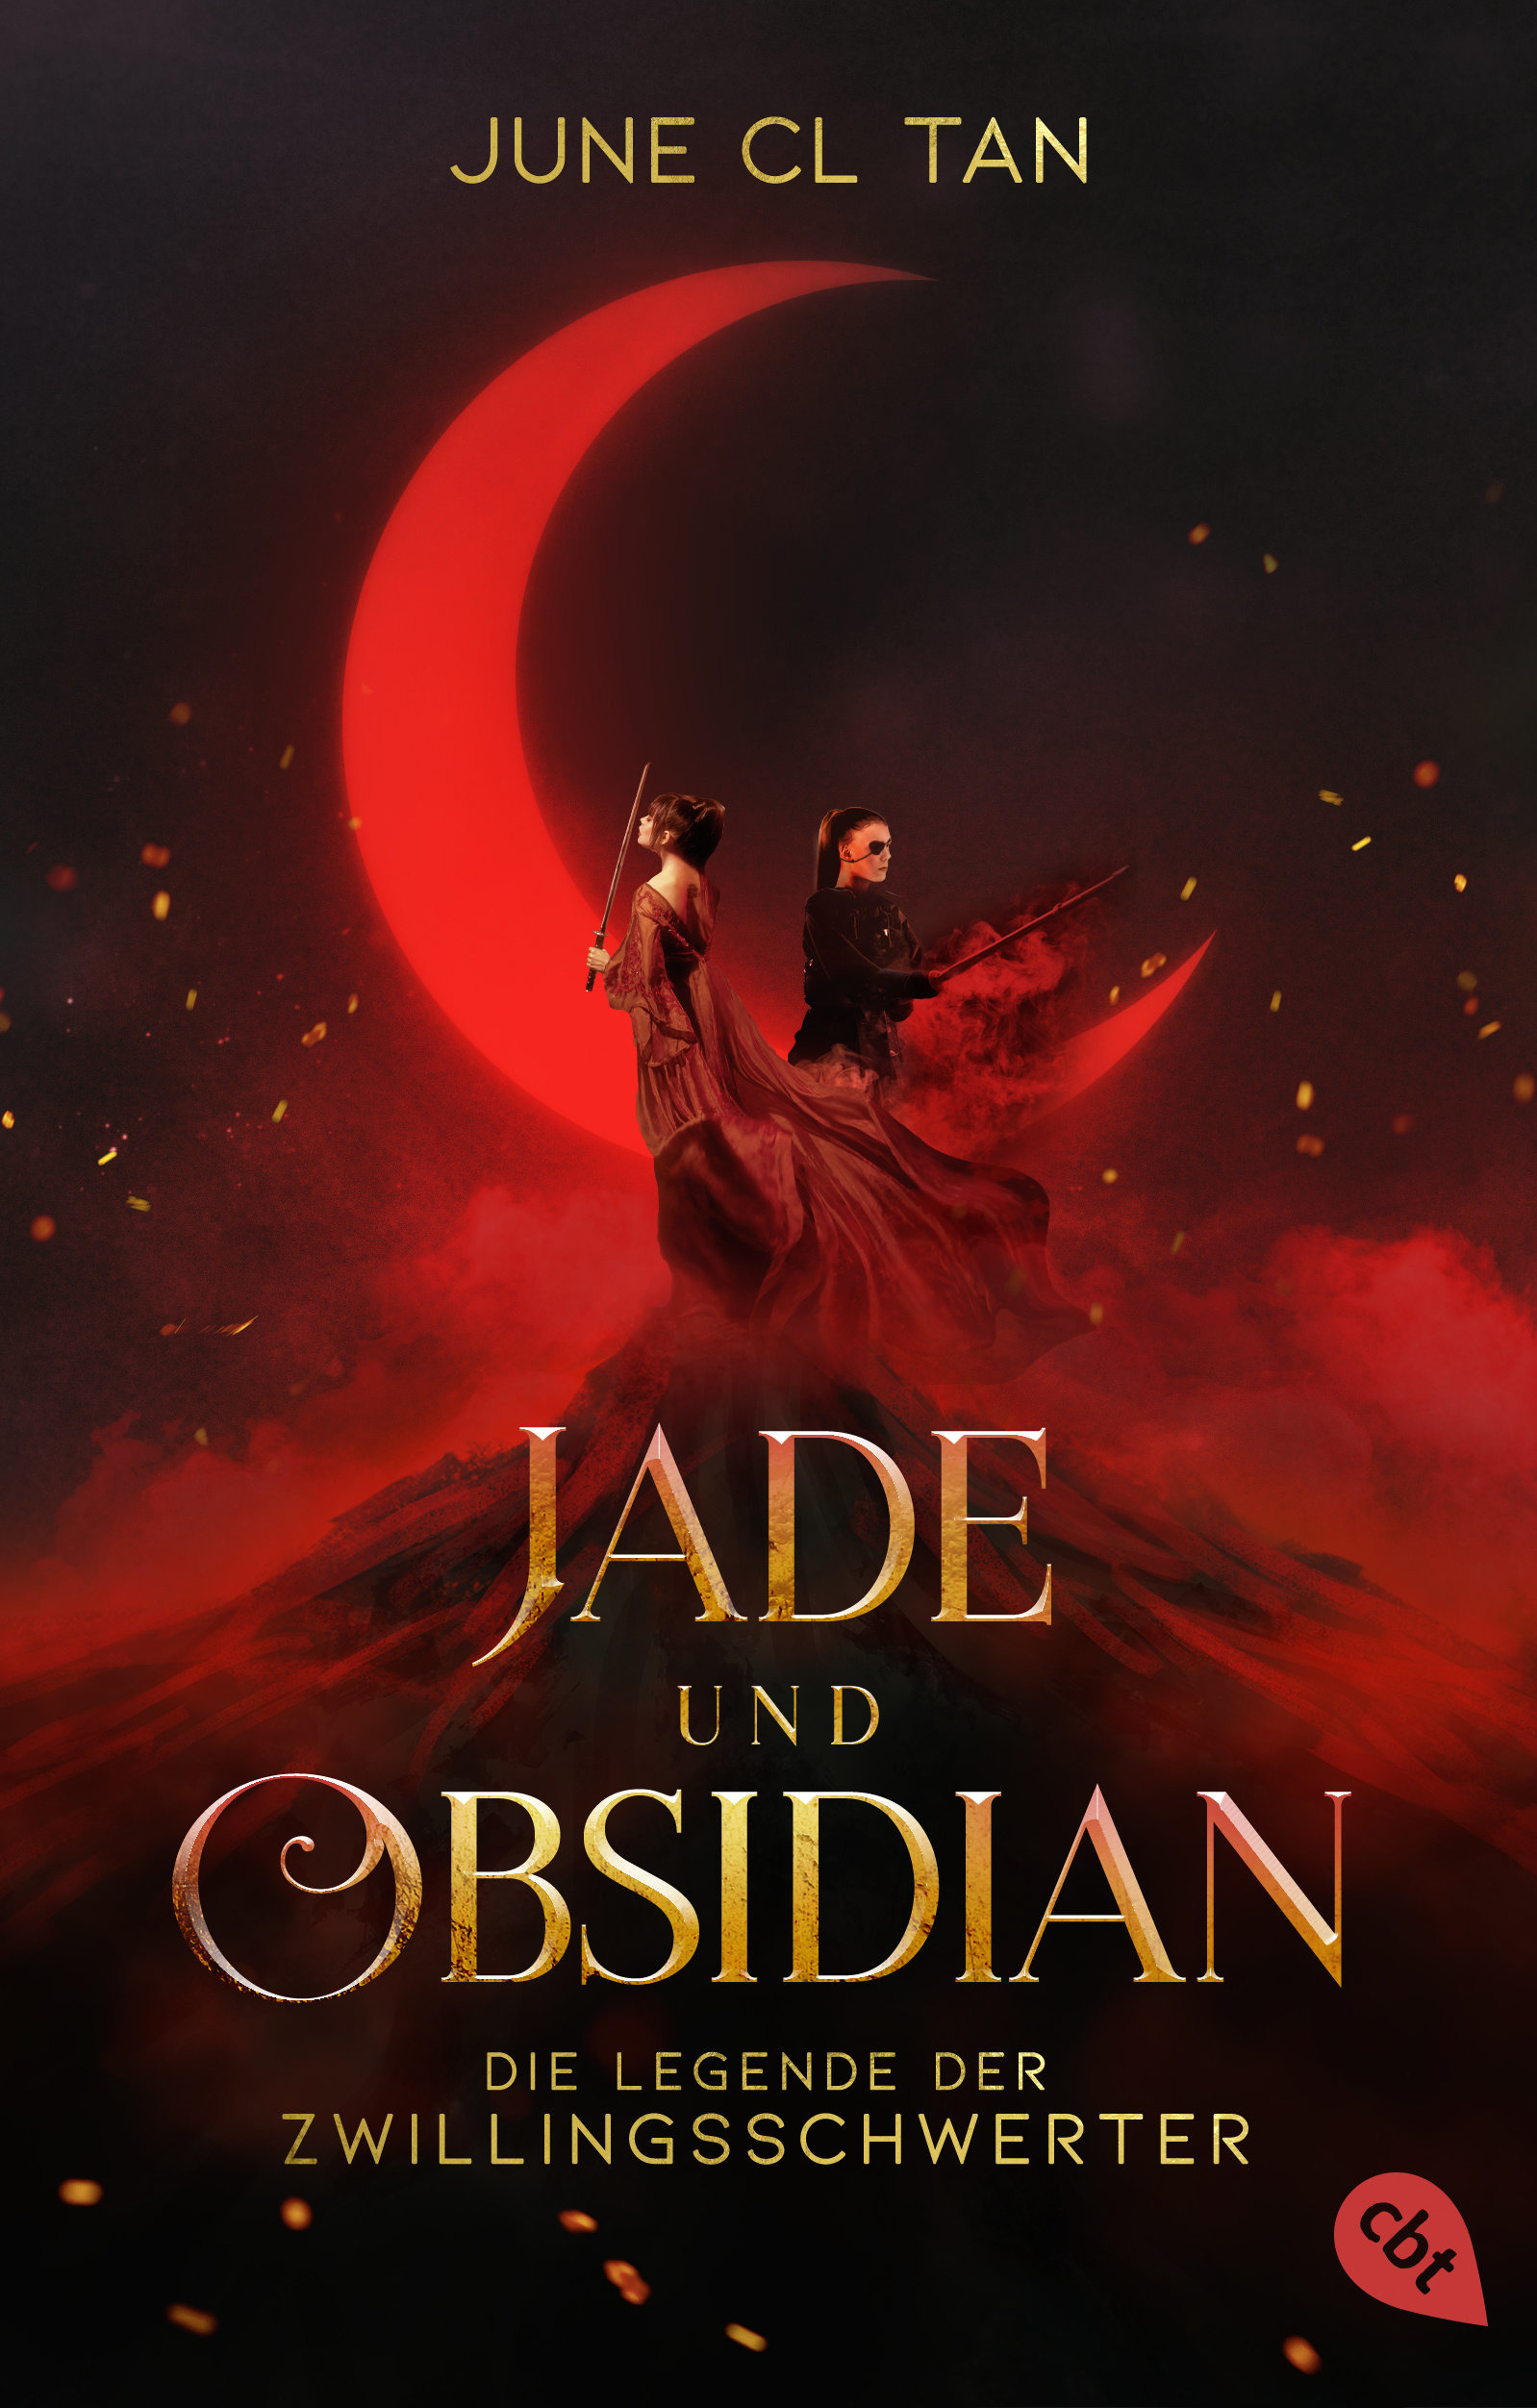 Bücherblog. Neuerscheinungen. Buchcover. Jade und Obsidian - Die Legende der Zwillingsschwerter von June CL Tan. Jugendbuch. Fantasy. cbt.